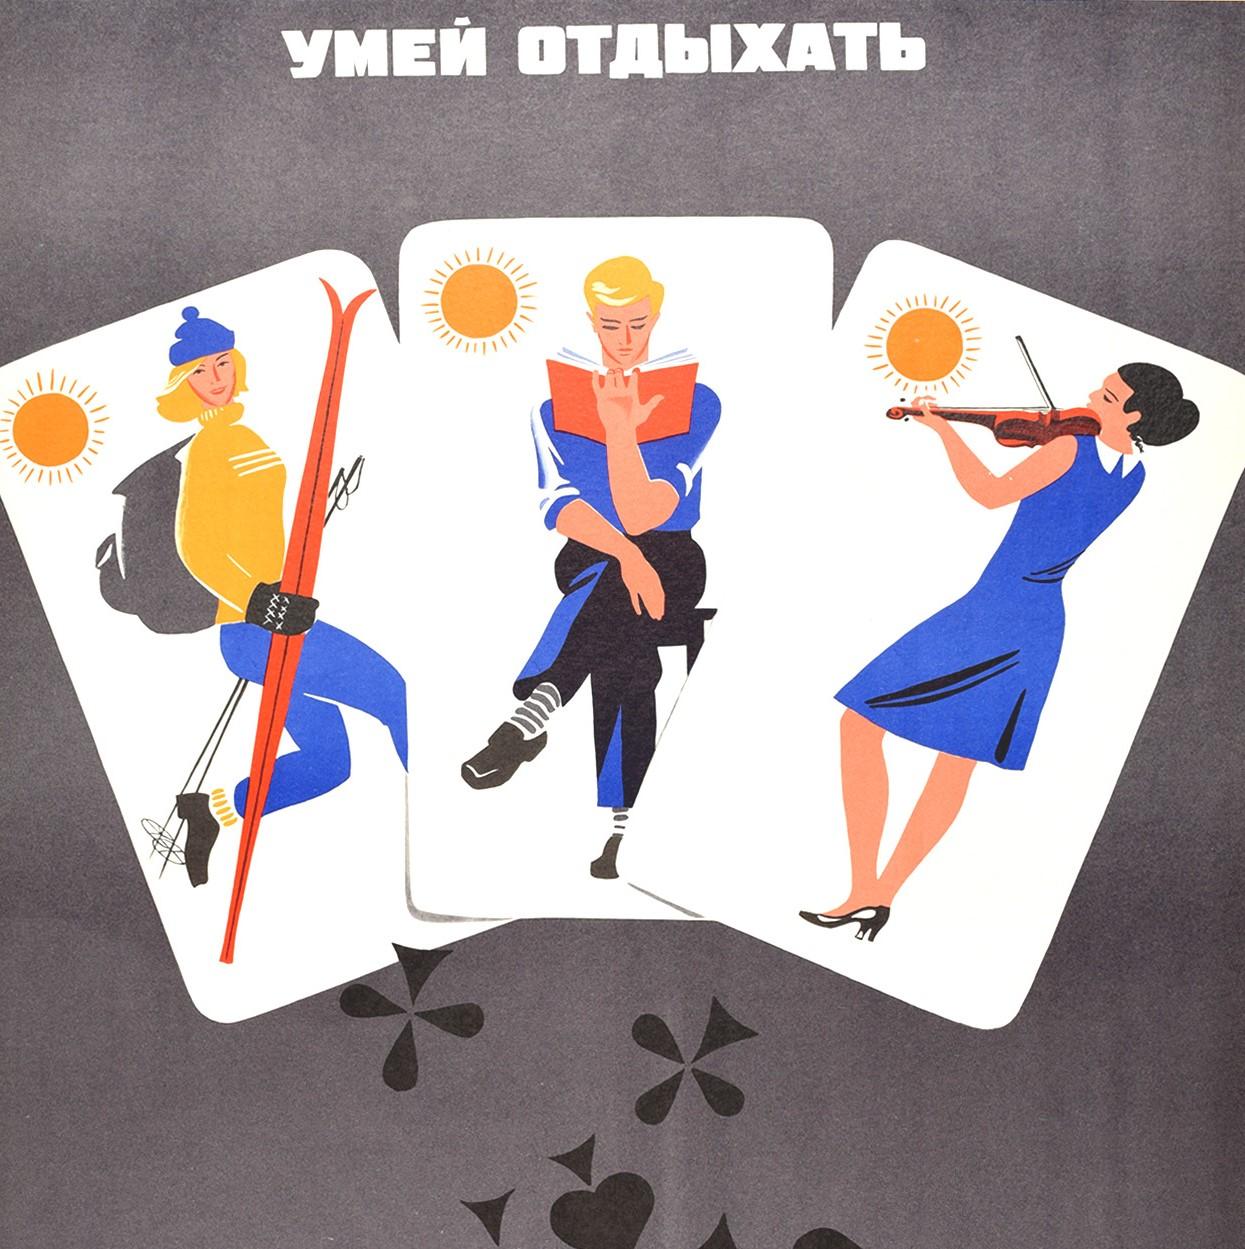 Original sowjetisches Propagandaplakat - Know How to Rest / Relax - mit einem großartigen Design, das die Farben eines fallenden Kartenspiels zeigt, mit dem König, der ein Trinkglas und eine Flasche mit der Aufschrift 40' hält, und der Königin, die